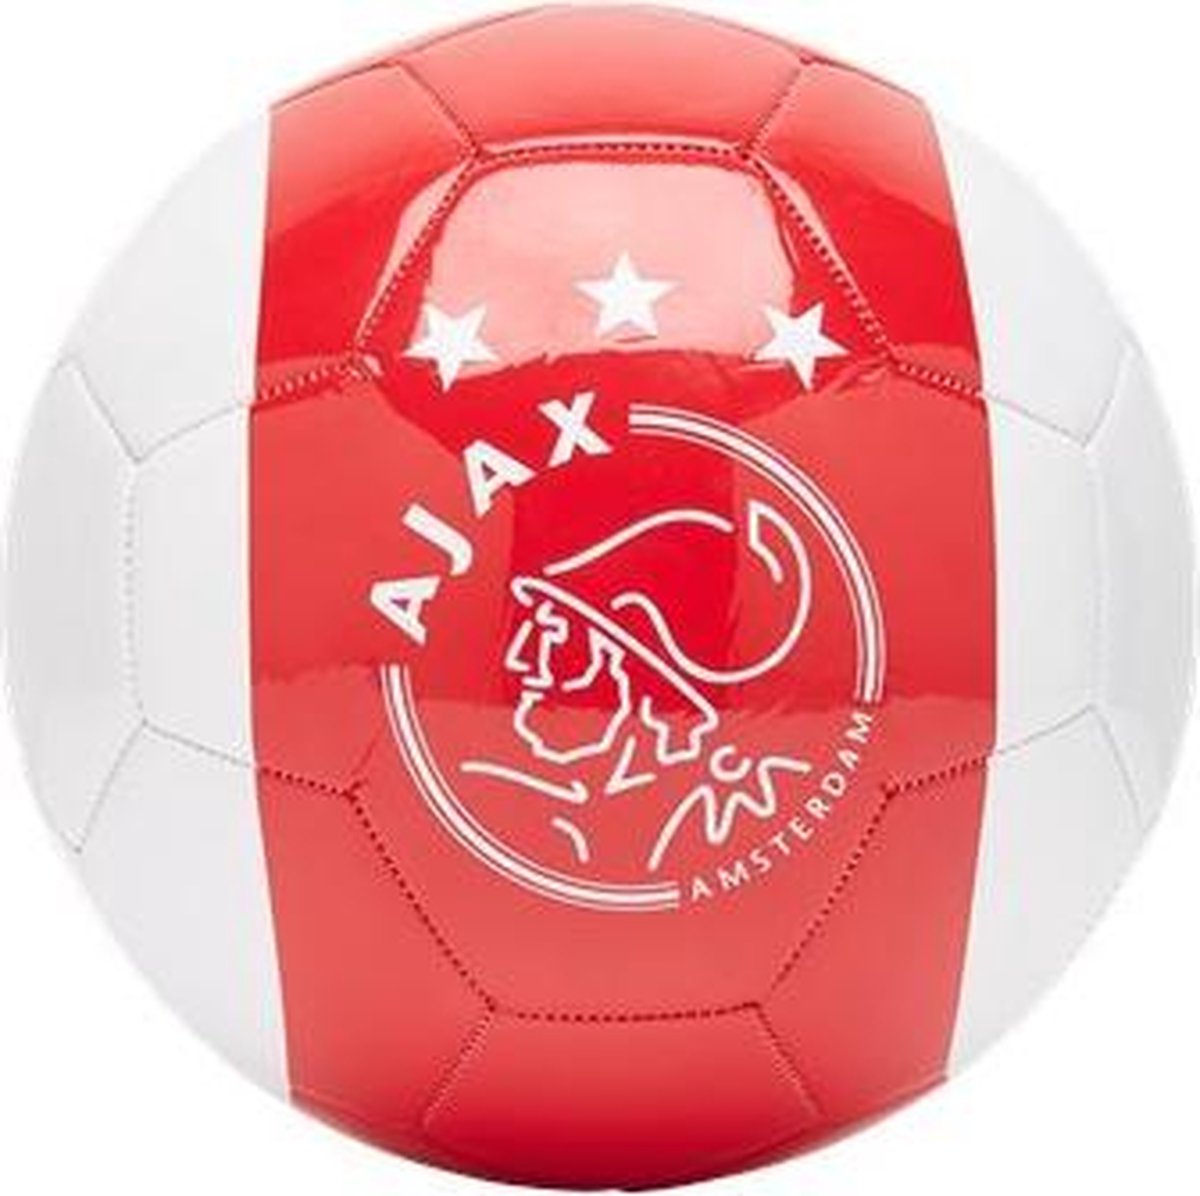 Ajax-minibal wit-rood-wit - Ajax